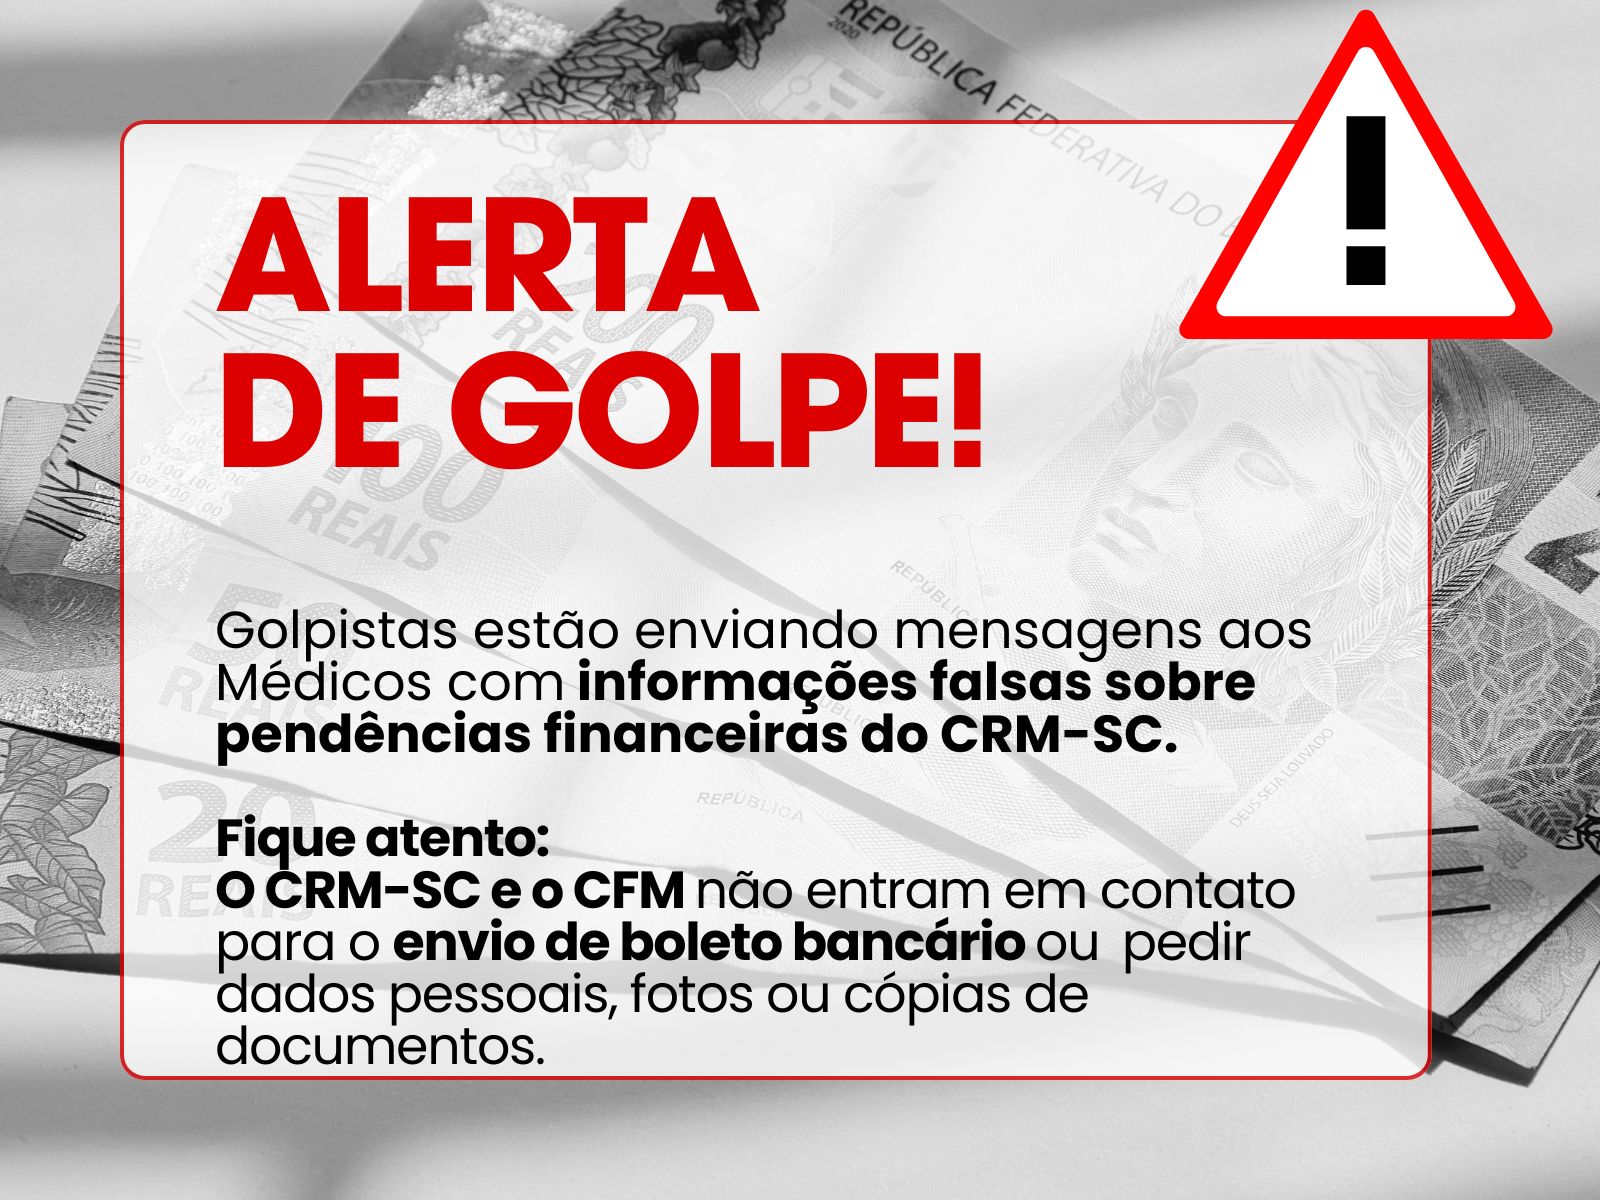 Alerta de Golpe: CRM-SC e CFM não enviam boleto bancário pelo WhatsApp